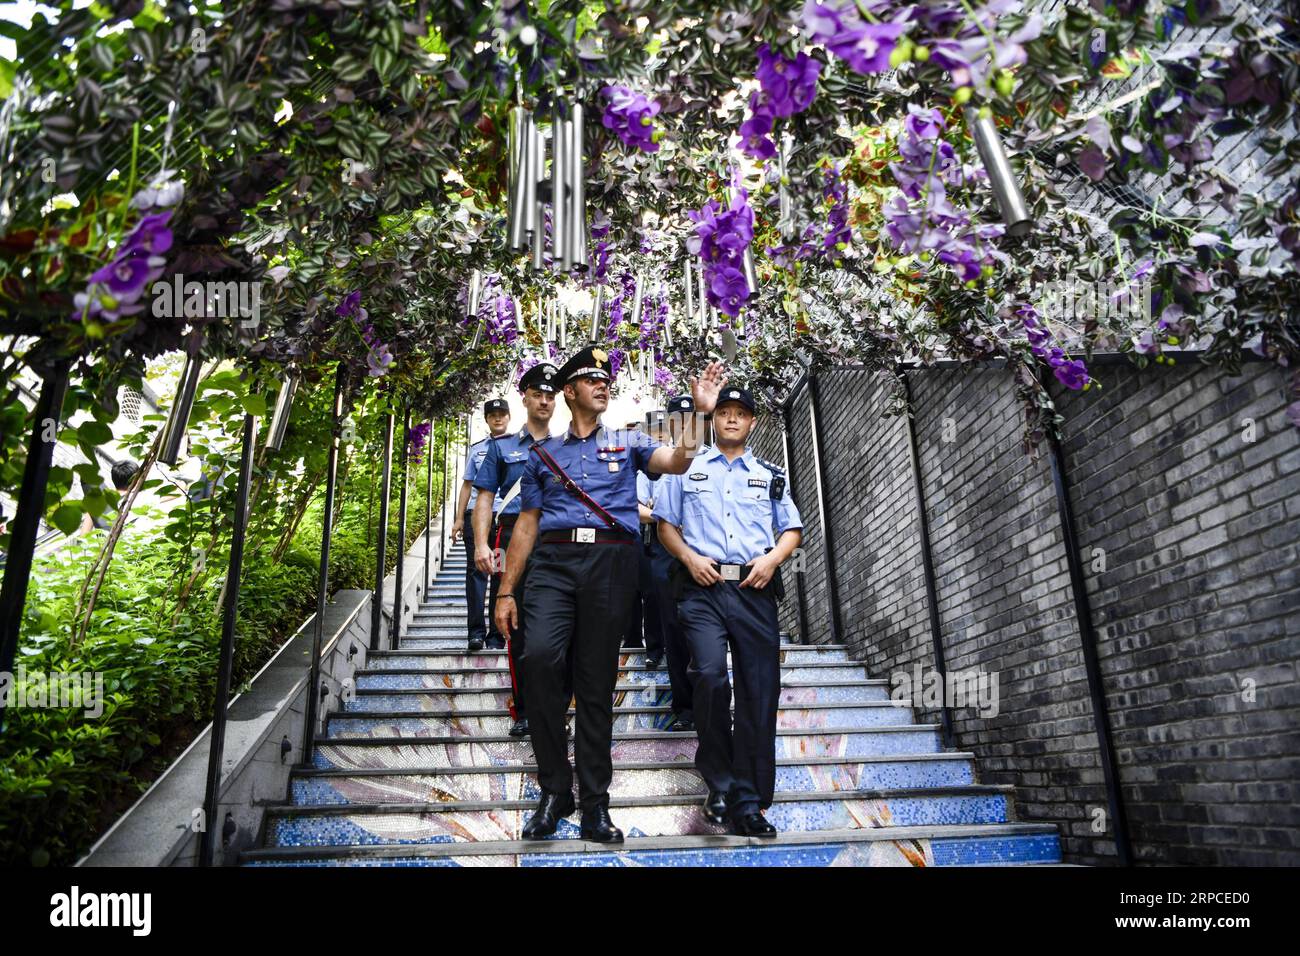 (190702) -- CHONGQING, 2 luglio 2019 -- agenti di polizia cinesi e italiani pattugliano in una vecchia strada nel distretto di Nan An nel comune di Chongqing della Cina sud-occidentale, 2 luglio 2019. La polizia di Chongqing ha lanciato una pattuglia congiunta con le loro controparti italiane il 26 giugno, secondo la polizia locale. Quattro poliziotti cinesi che parlavano fluentemente inglese e italiano si unirono alla pattuglia con due poliziotti italiani. Pattugliamento in località turistiche popolari del comune, i poliziotti italiani aiuteranno ad affrontare le questioni legate ai turisti italiani durante la pattuglia congiunta di 10 giorni. L'Ital Foto Stock